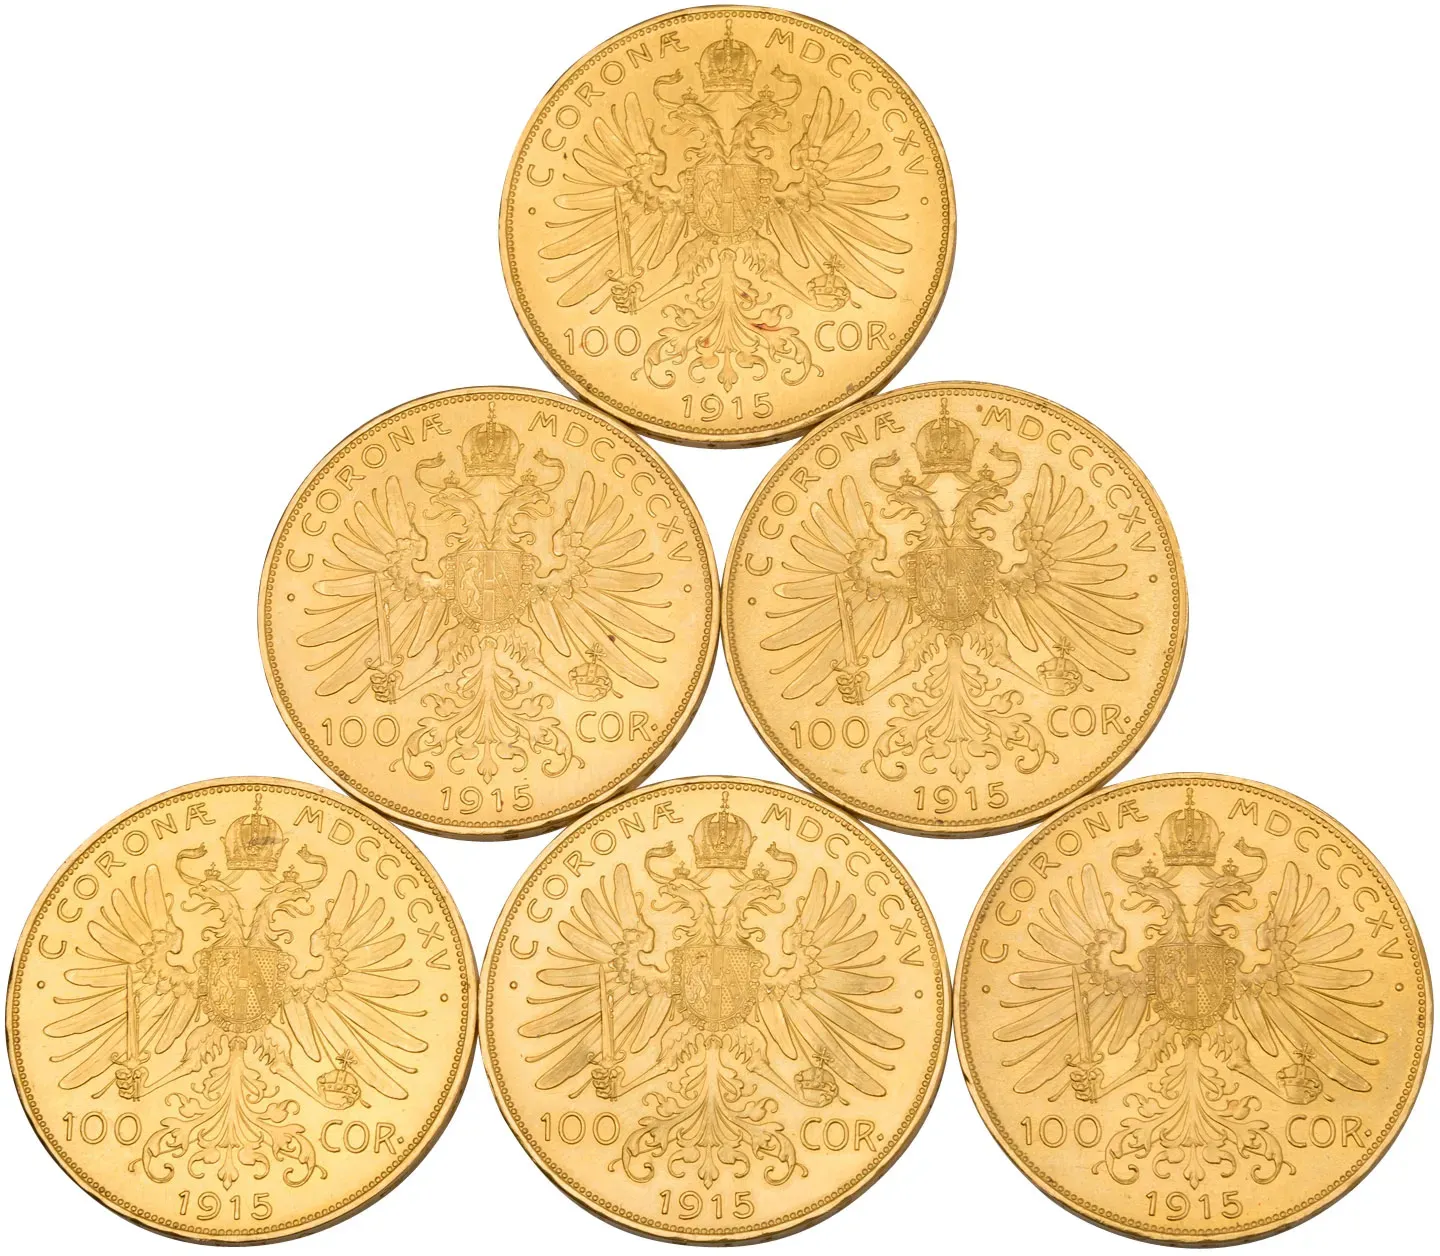 Investmentpaket 10 x Goldmünzen 100 Kronen